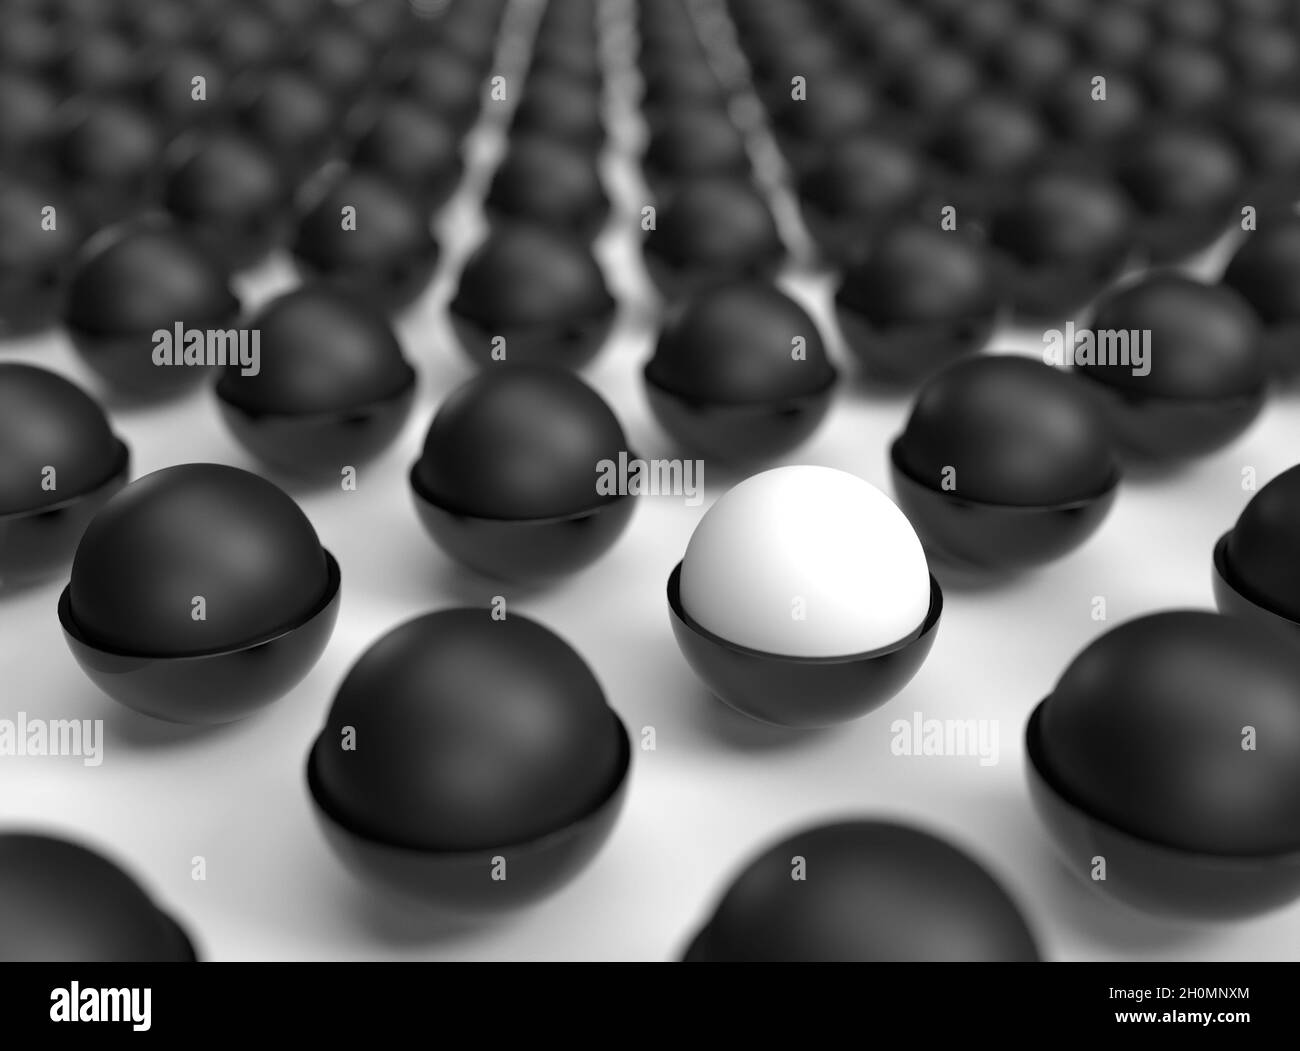 Une seule boule blanche dans un champ de boules noires Photo Stock ...